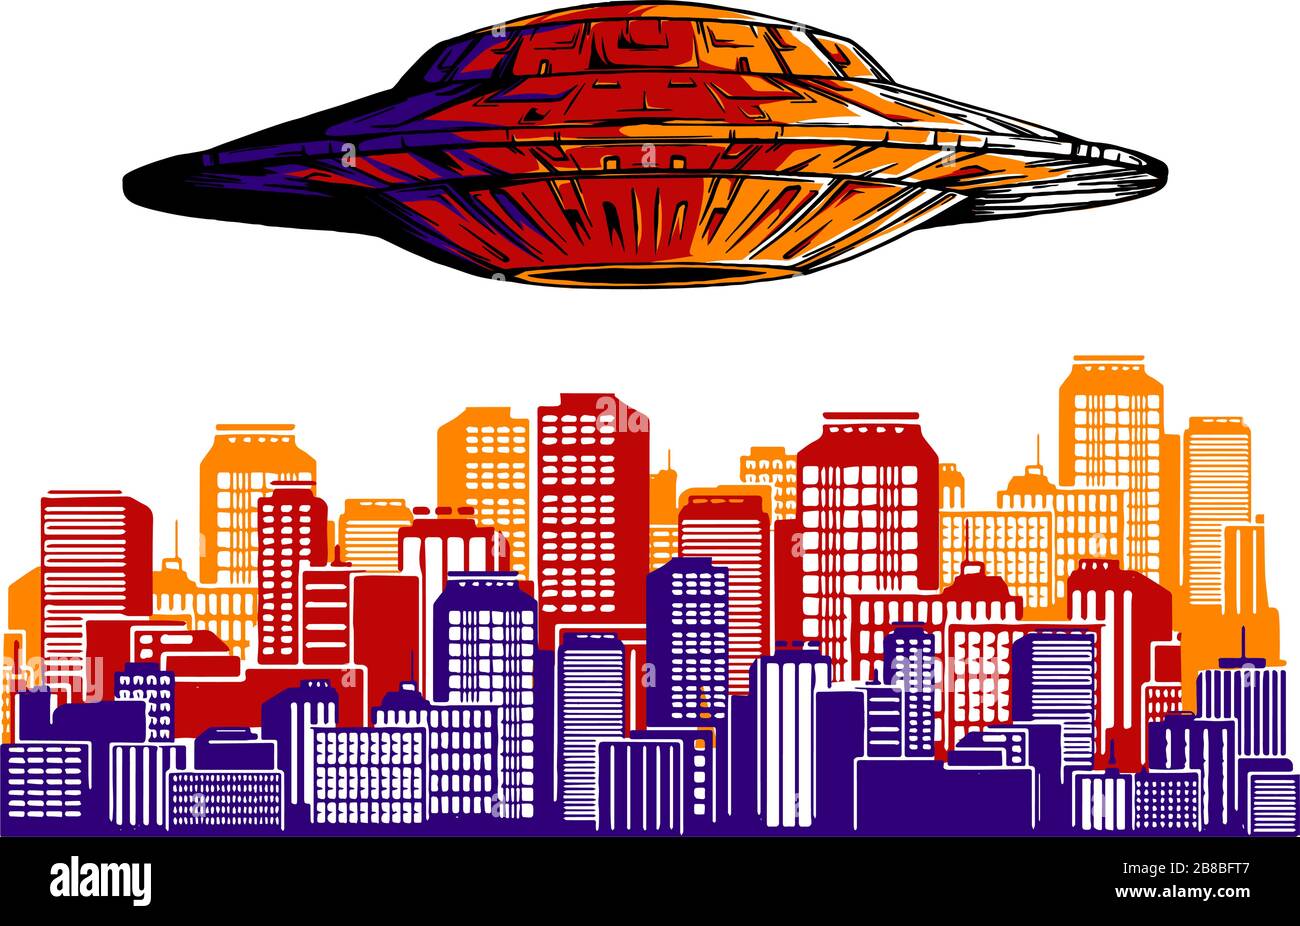 Alien-Invasion. UFO zerstört den Stadtvektor. Superhelden schützt die Stadt. Silhouette der Stadt. Stock Vektor